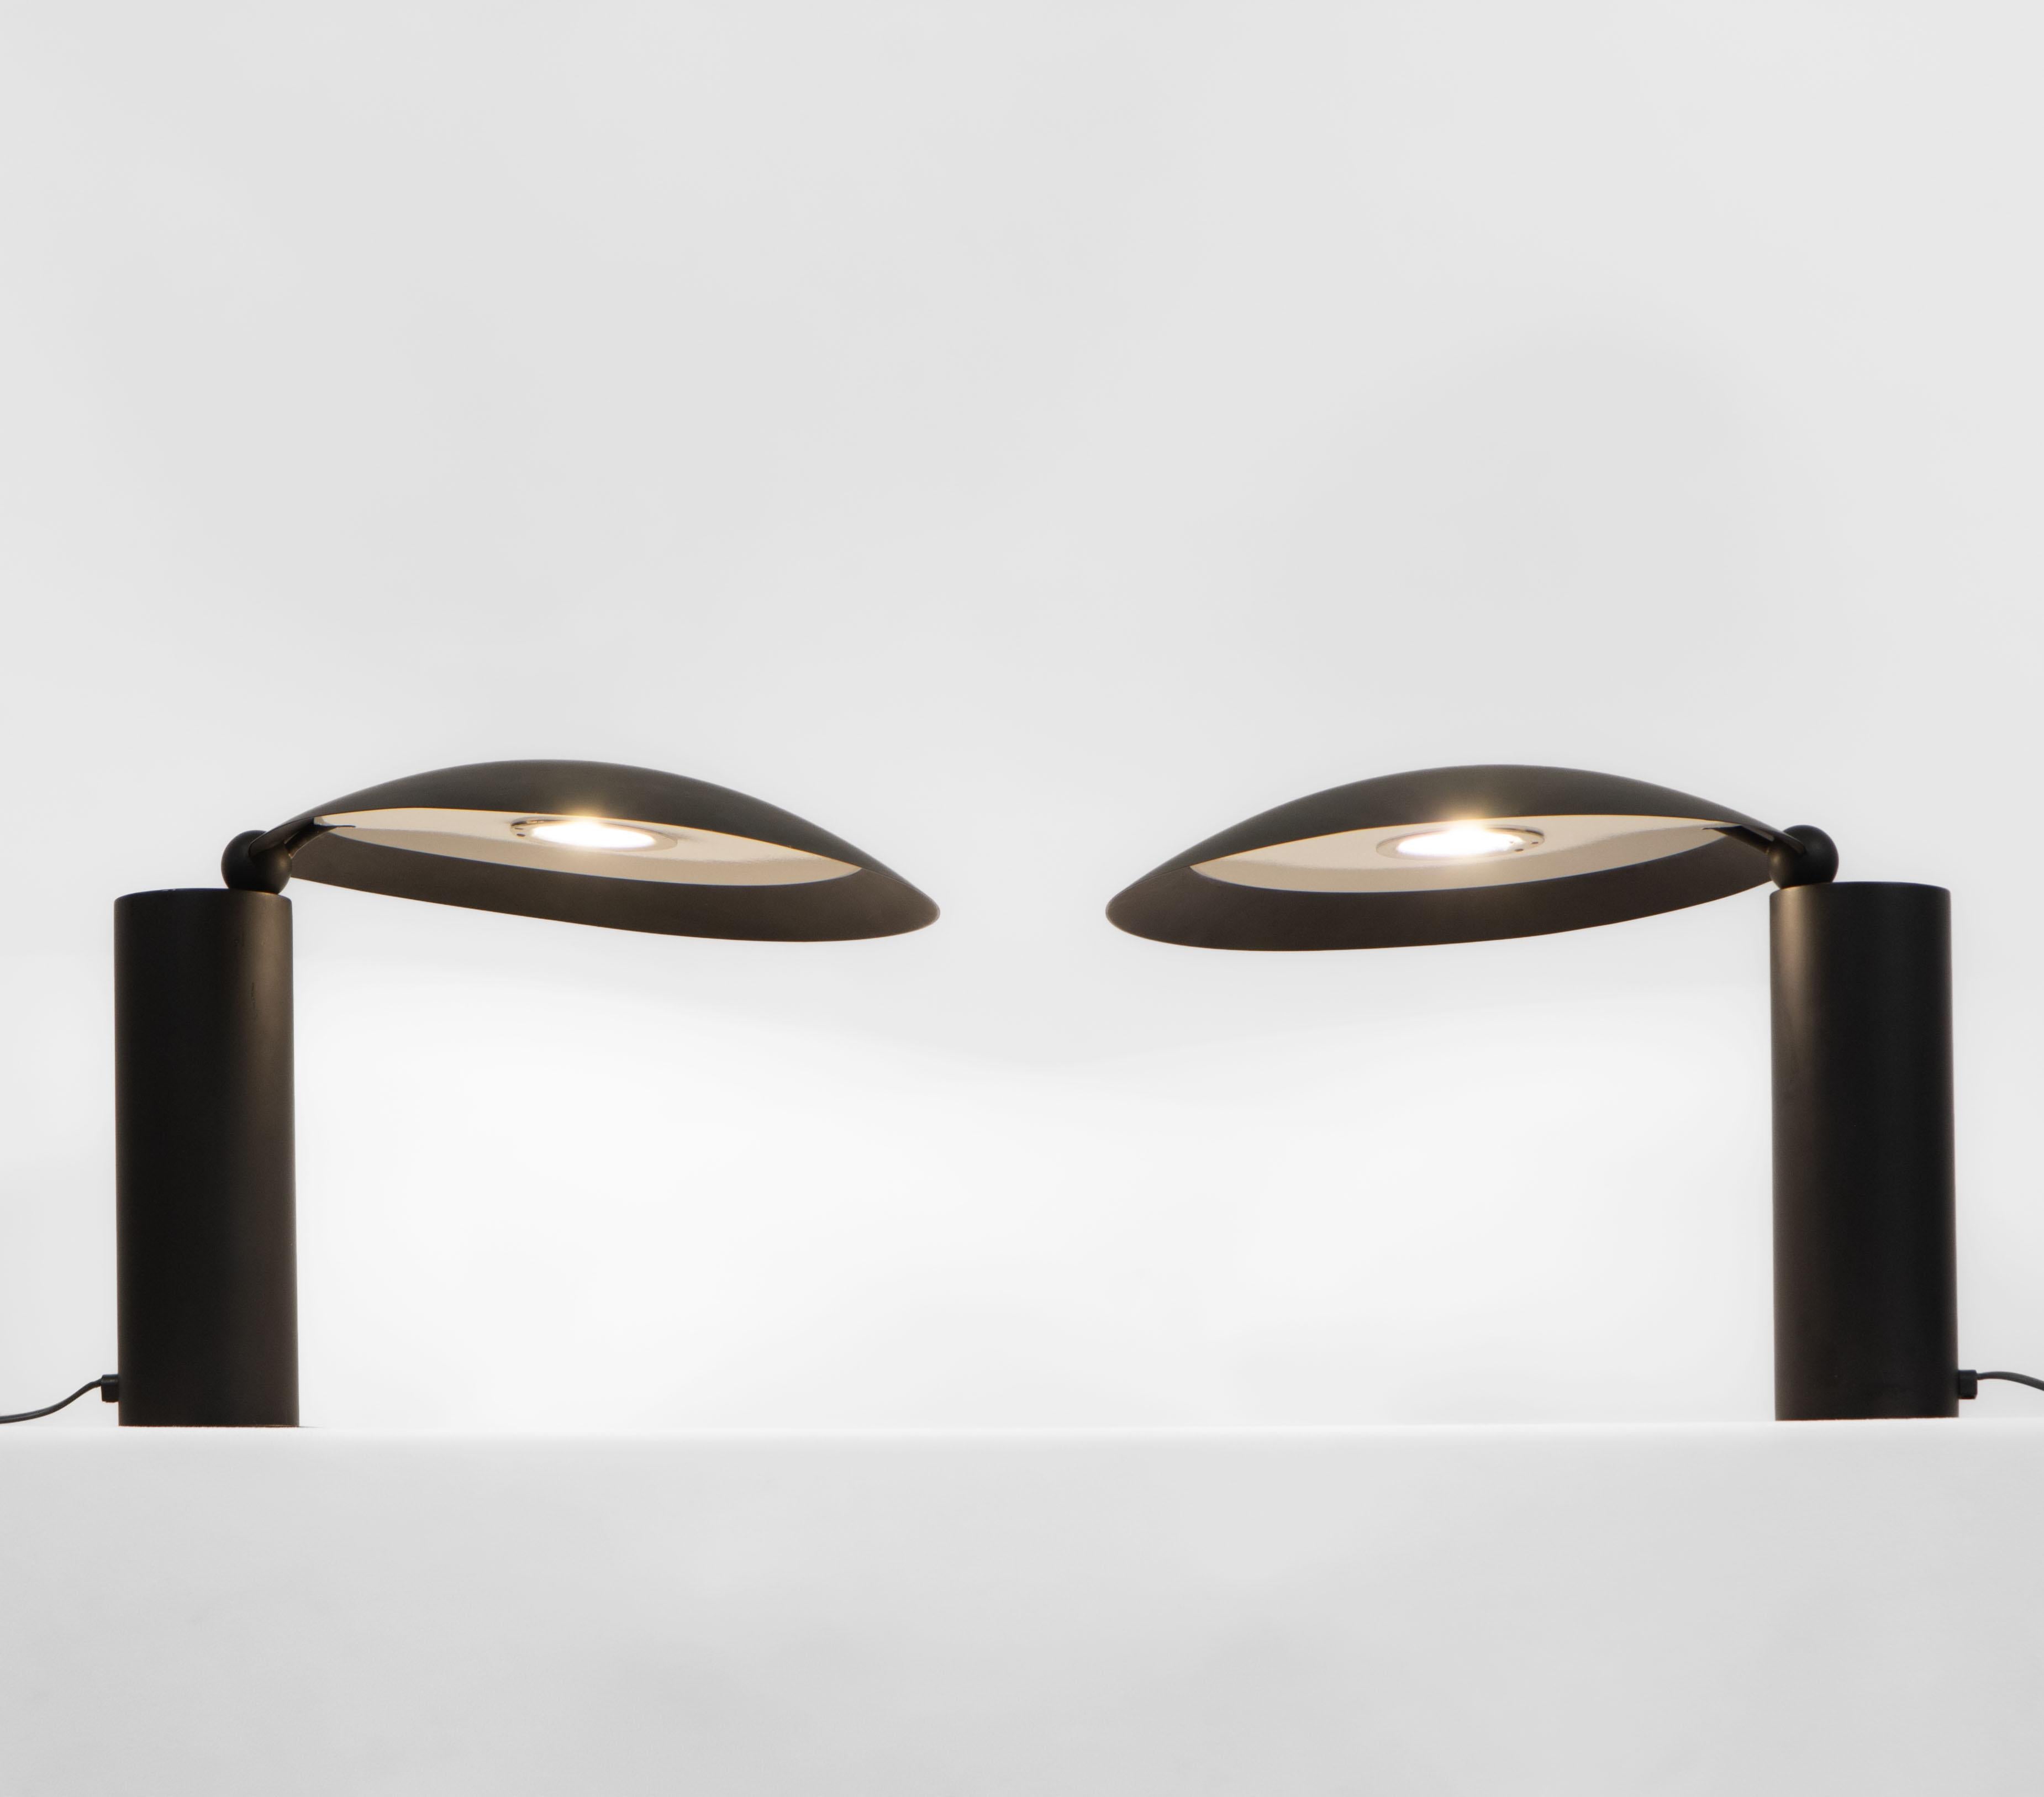 Une fabuleuse paire de lampes de table vintage Washington, conçue en 1983 par l'architecte français Jean-Michel Wilmotte pour le Lumen Center Italia, vers les années 1980.

Conçu à l'origine pour l'ambassade de France à Washington DC. Ce sont les